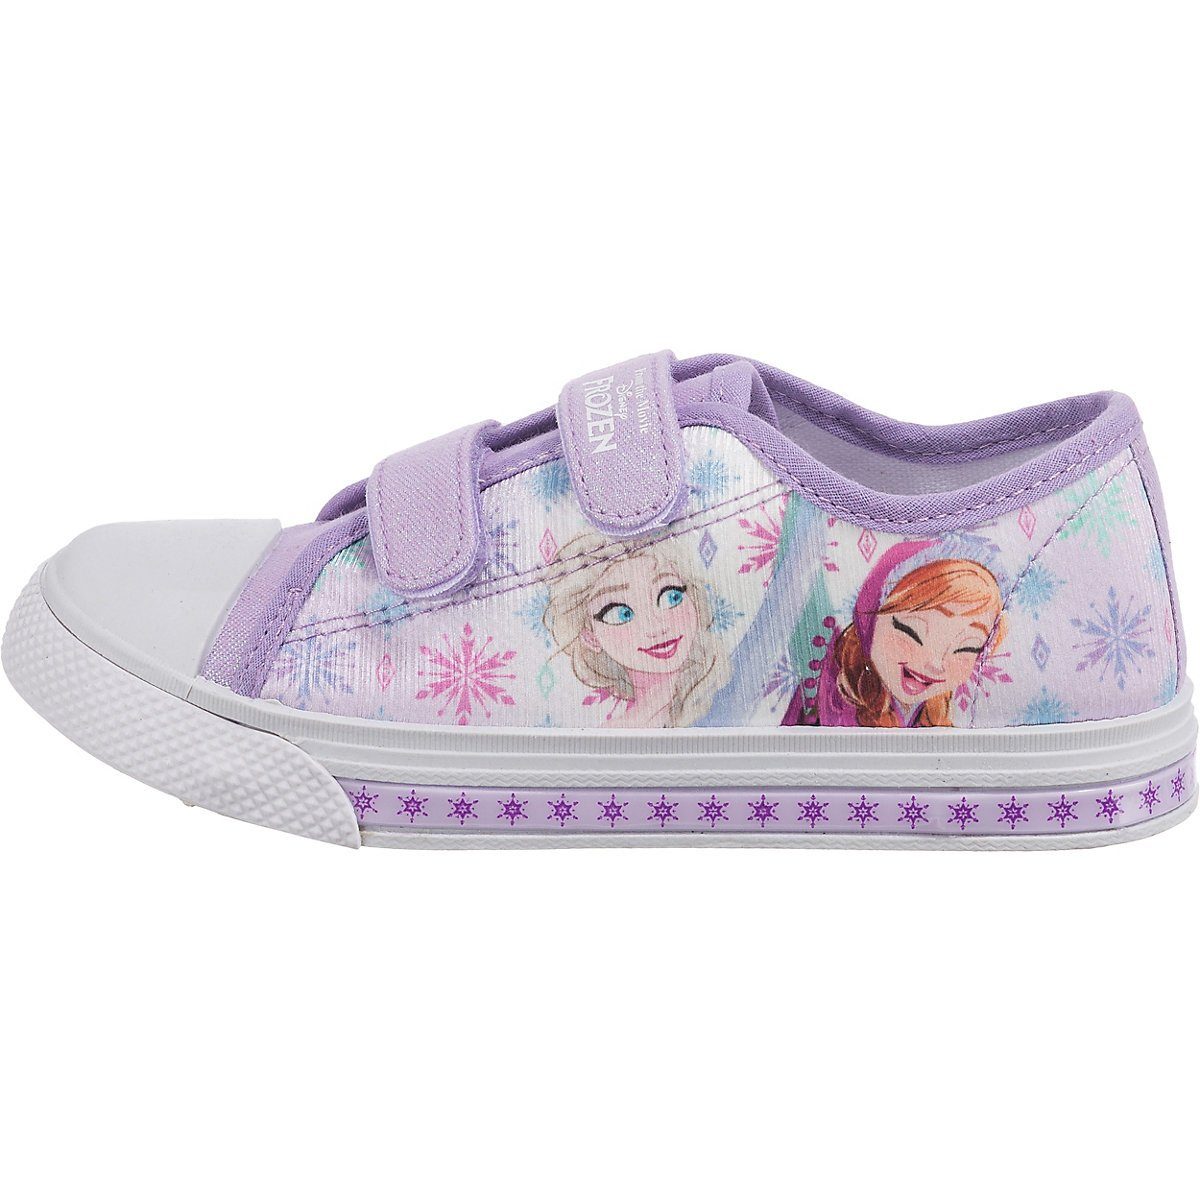 Schuhe Alle Sneaker Disney Frozen Disney Die Eiskönigin Sneakers Low Blinkies TELA Sneaker